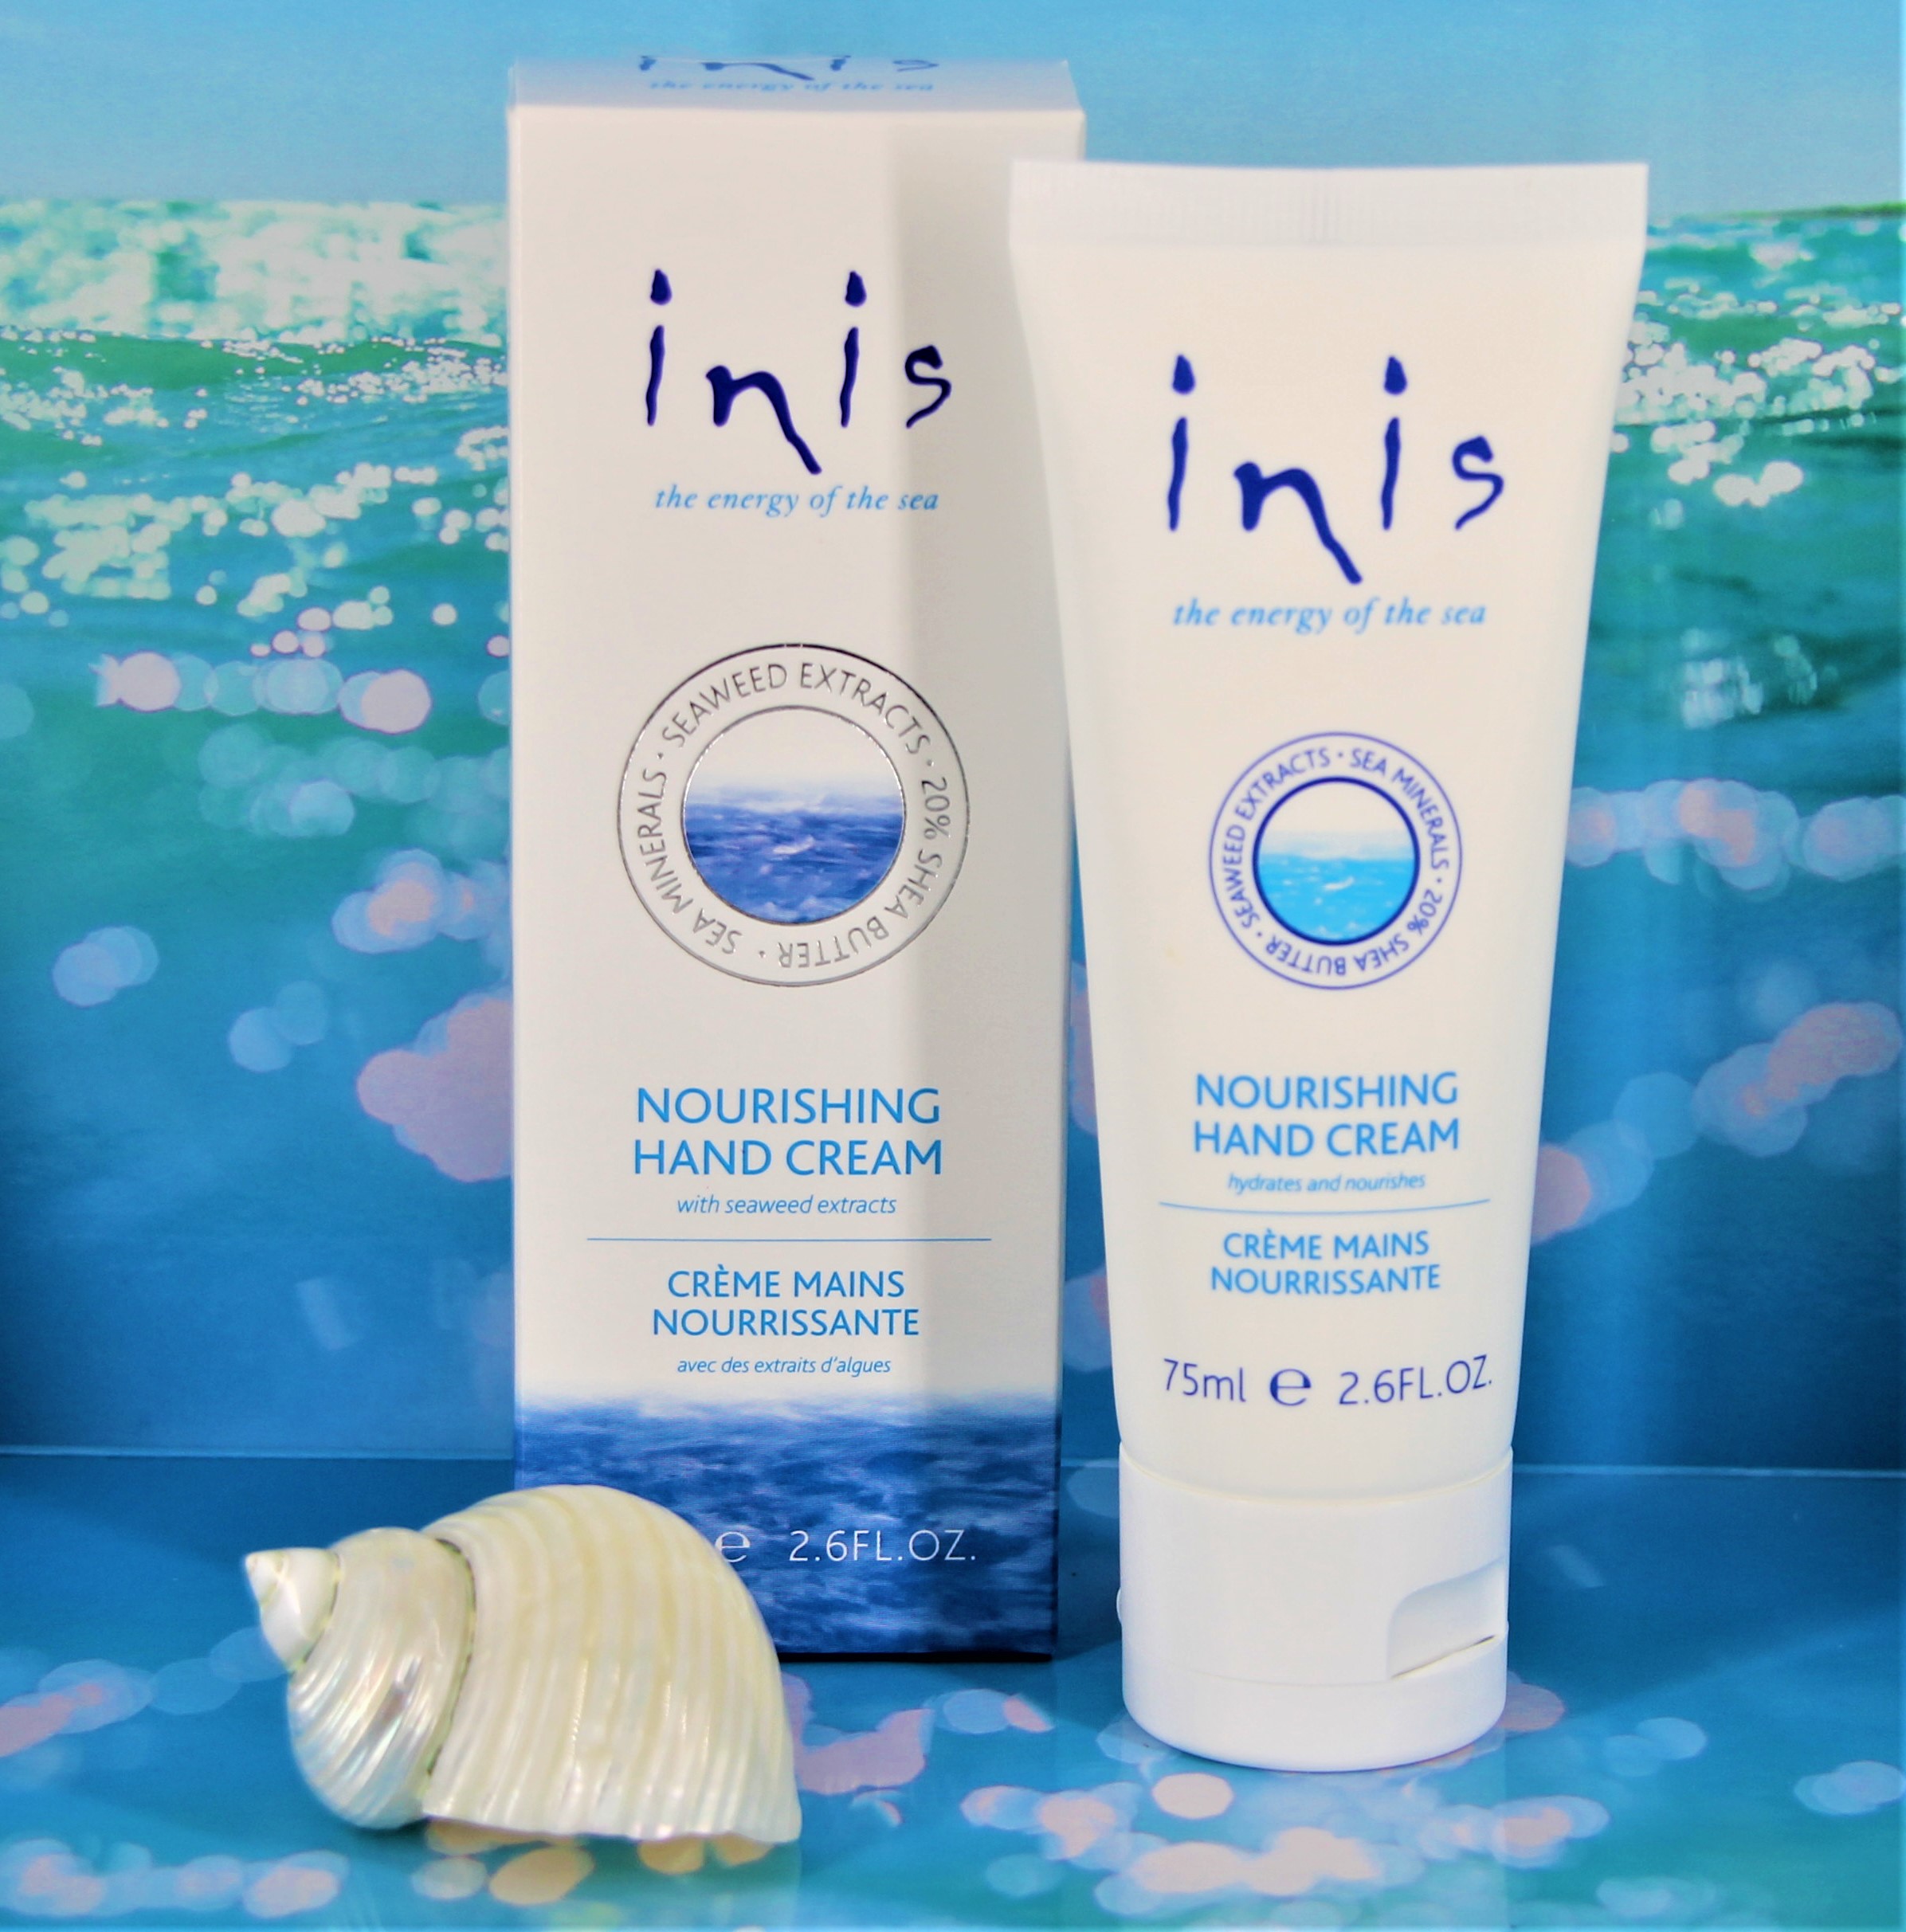 inis - Nourishing Hand Cream